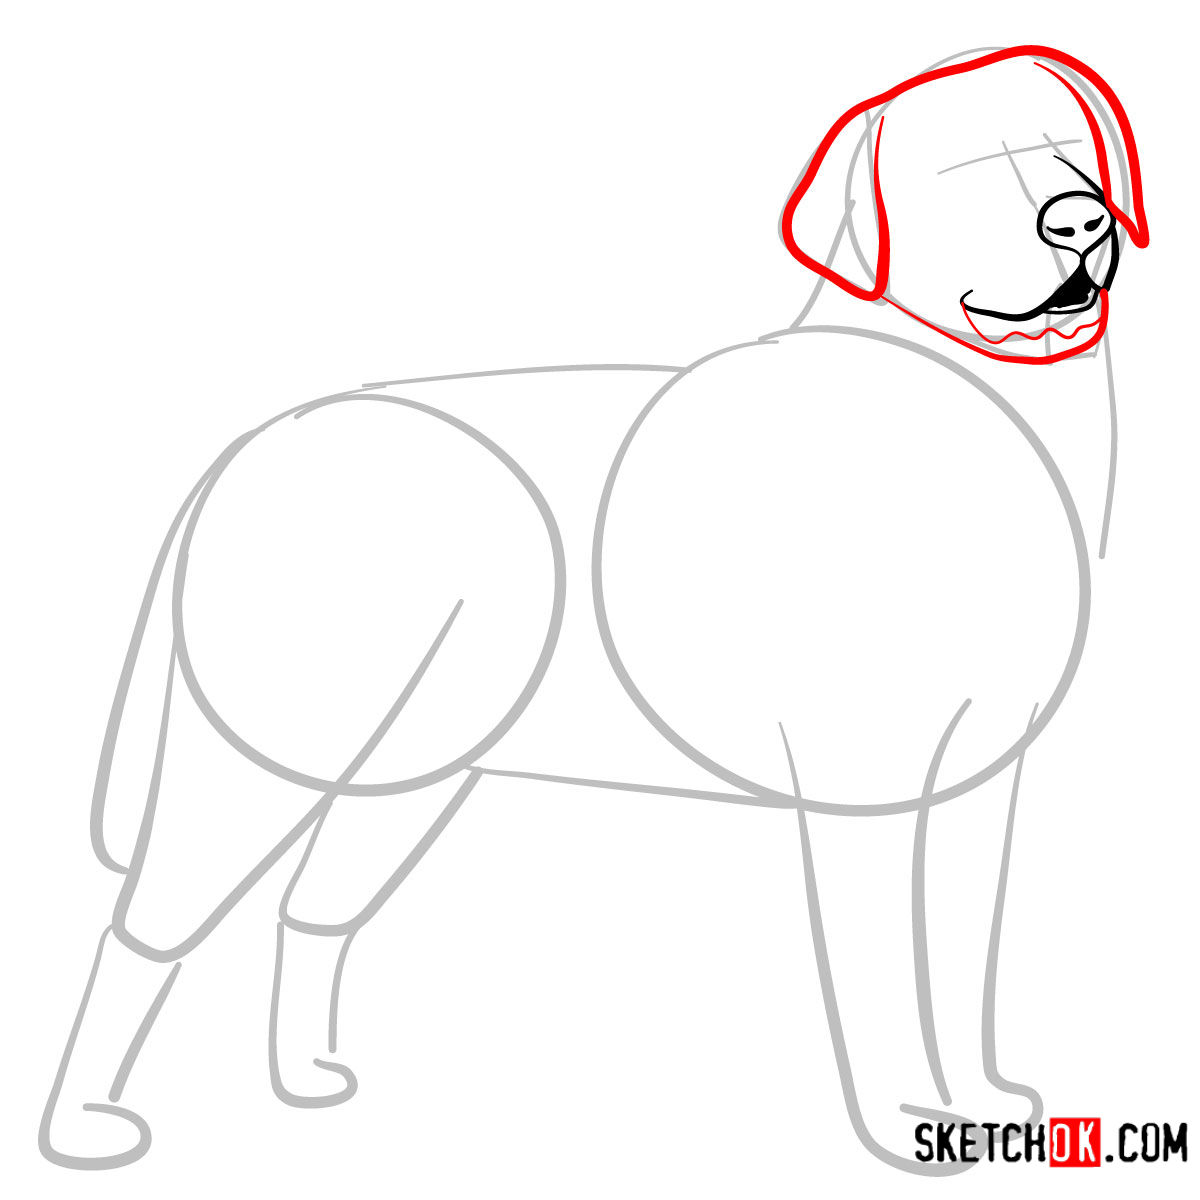 How to draw the Labrador Retriever dog - step 04